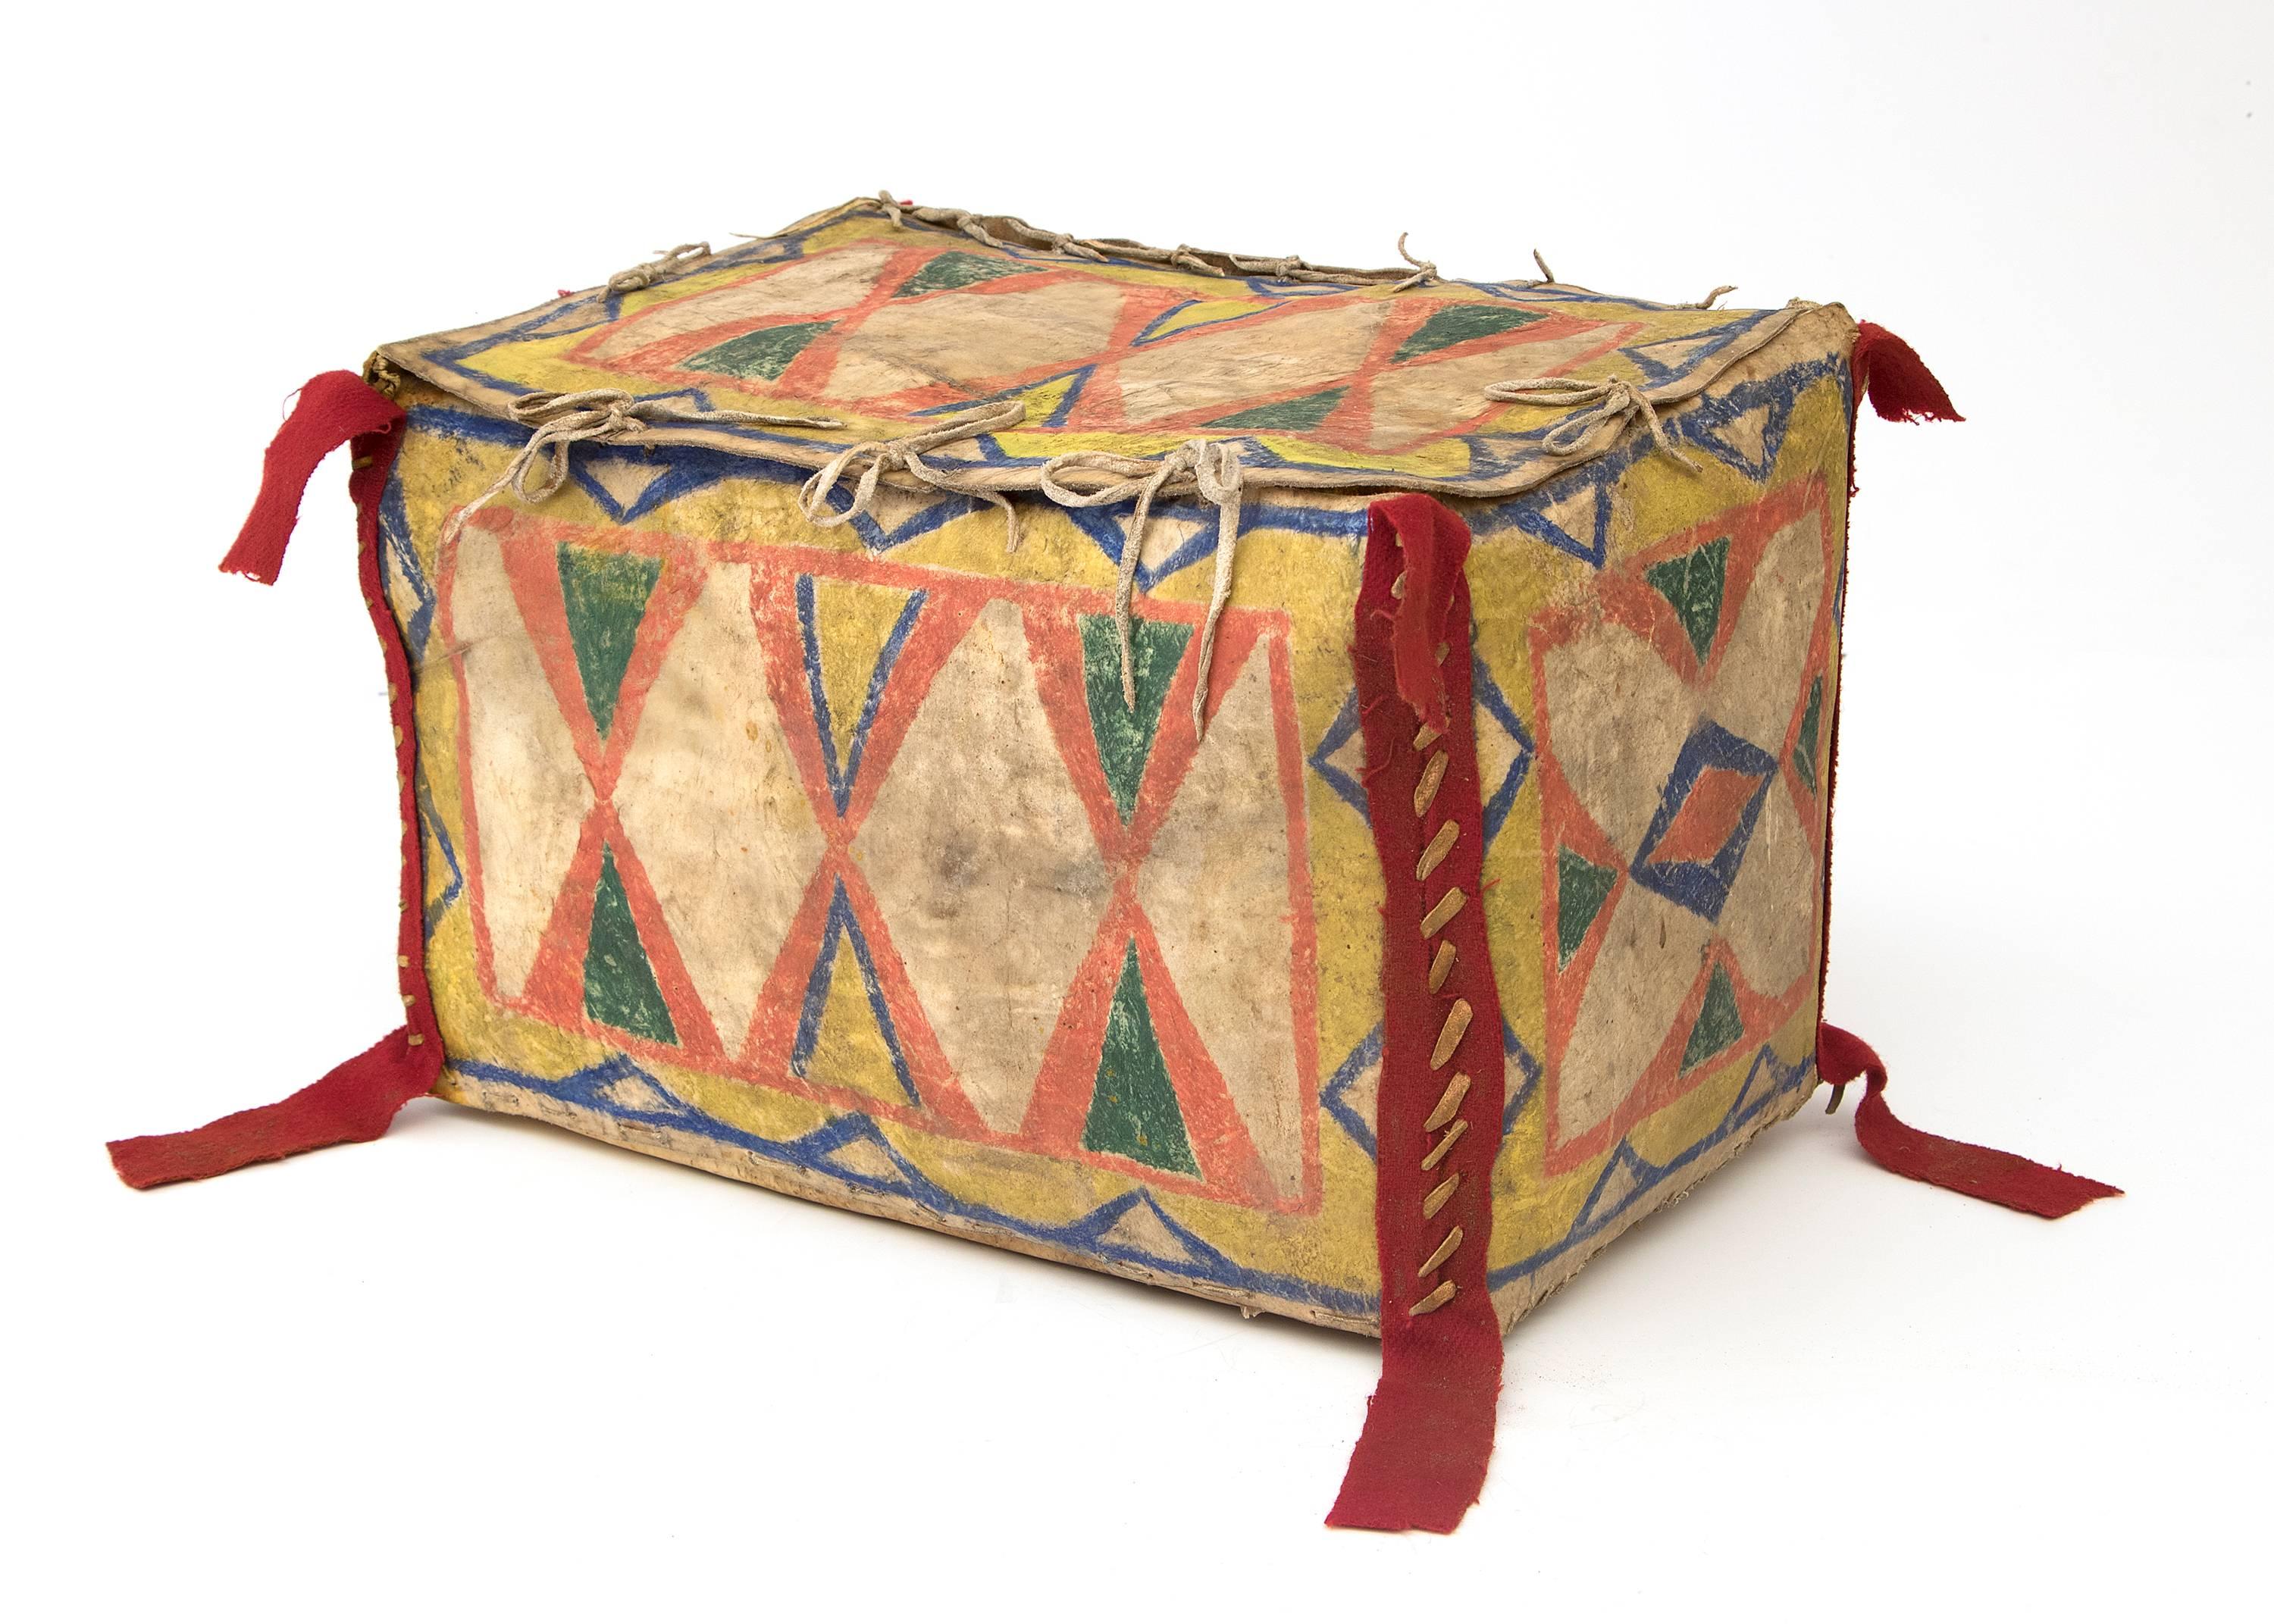 Ancienne Parfleche Sioux (Amérindiens/Plains) en forme de boîte construite en cuir brut et peinte de façon complexe dans un design abstrait avec des sabliers et des motifs géométriques avec des pigments naturels et du tissu commercial rouge.

À